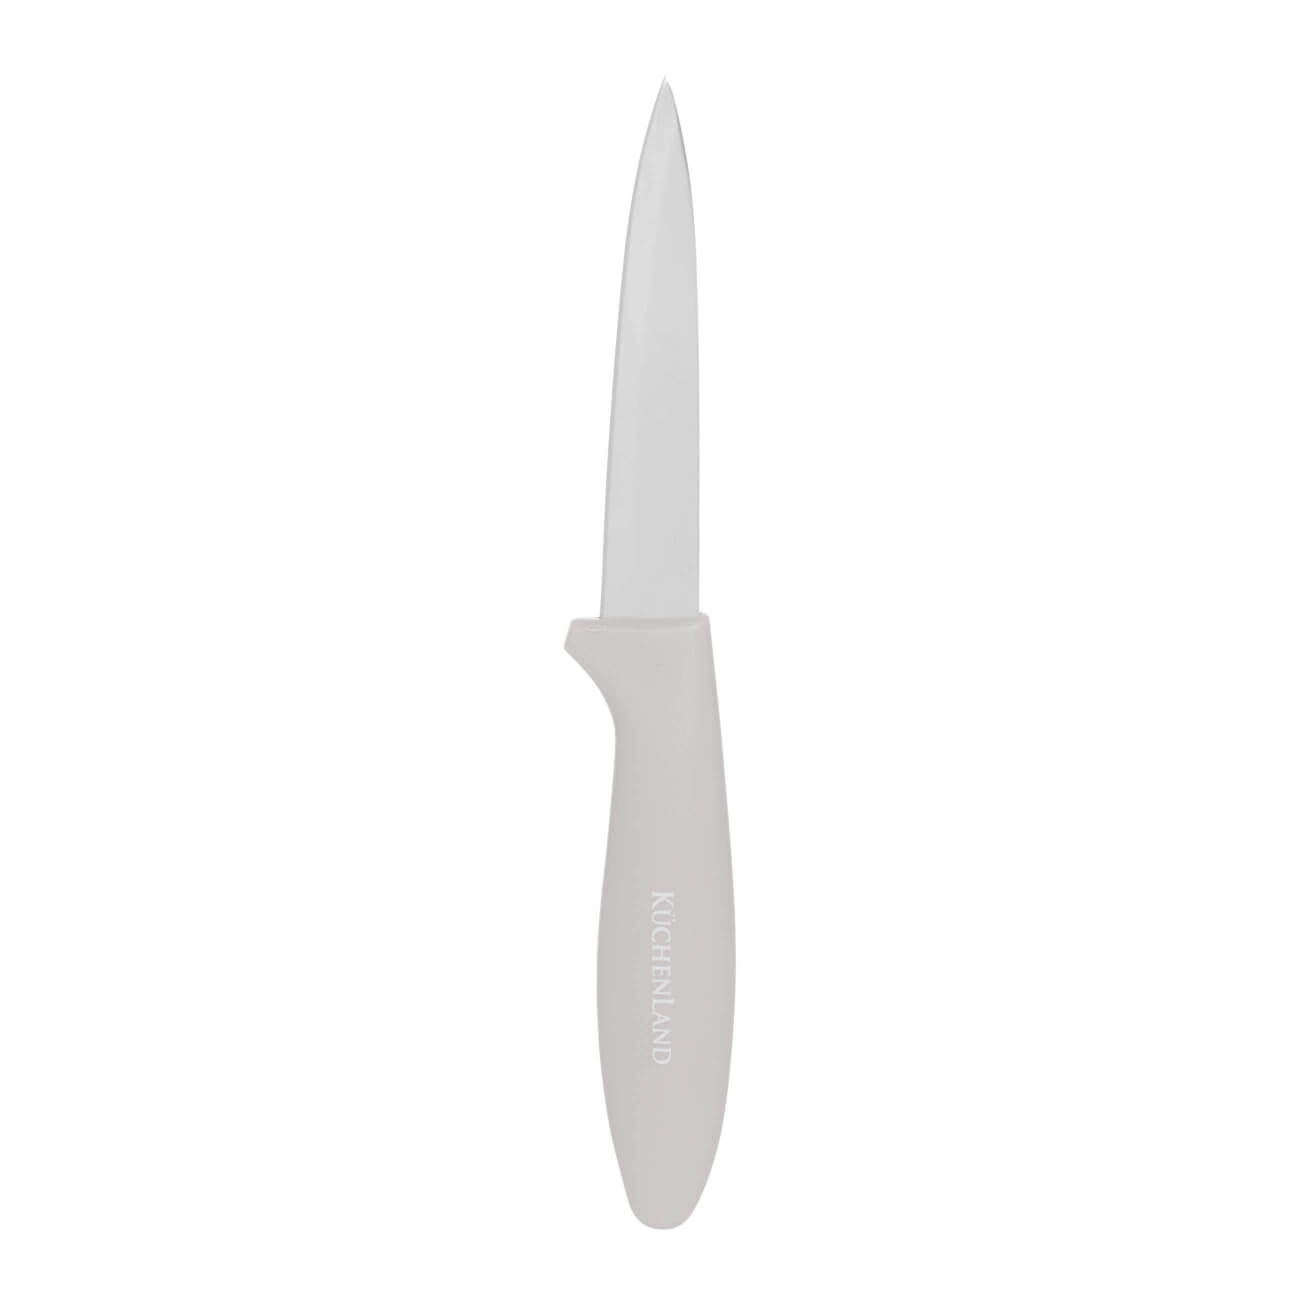 Нож для чистки овощей, 9 см, сталь/пластик, серо-коричневый, Regular цельнометаллический нож для овощей mallony